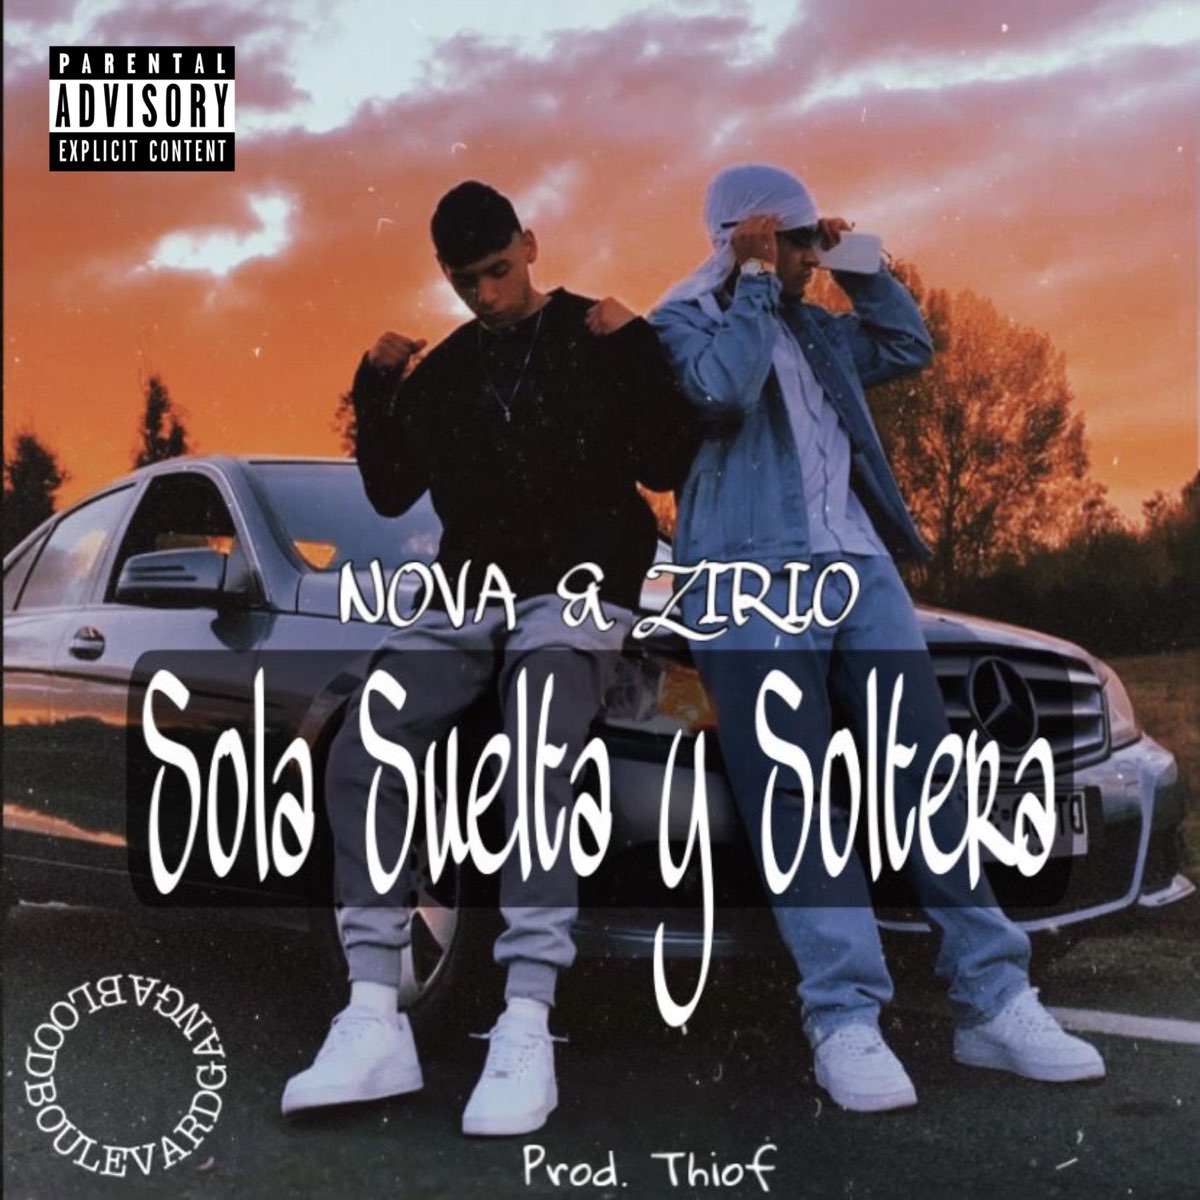 Sola Suelta & Soltera - Single - Album by Nova y Zirio - Apple Music